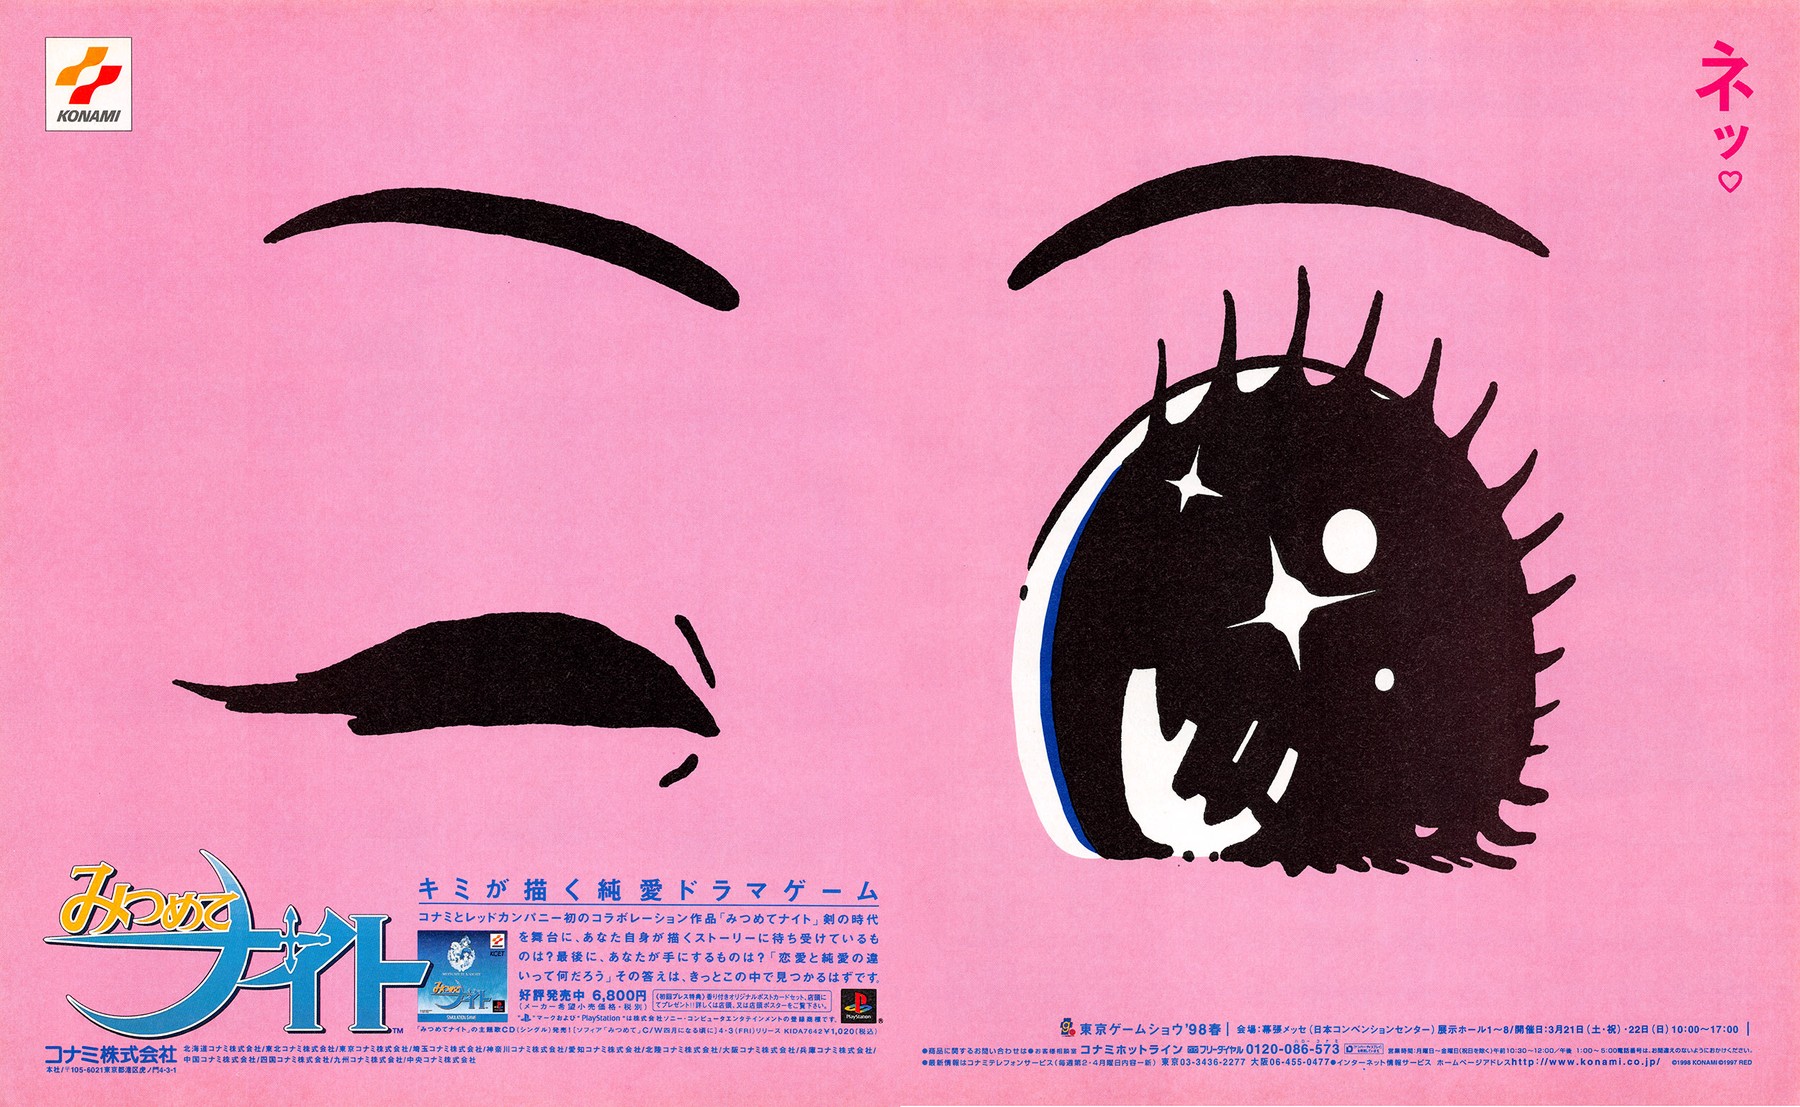 みつめてナイト (Mitsumete Knight), 1998